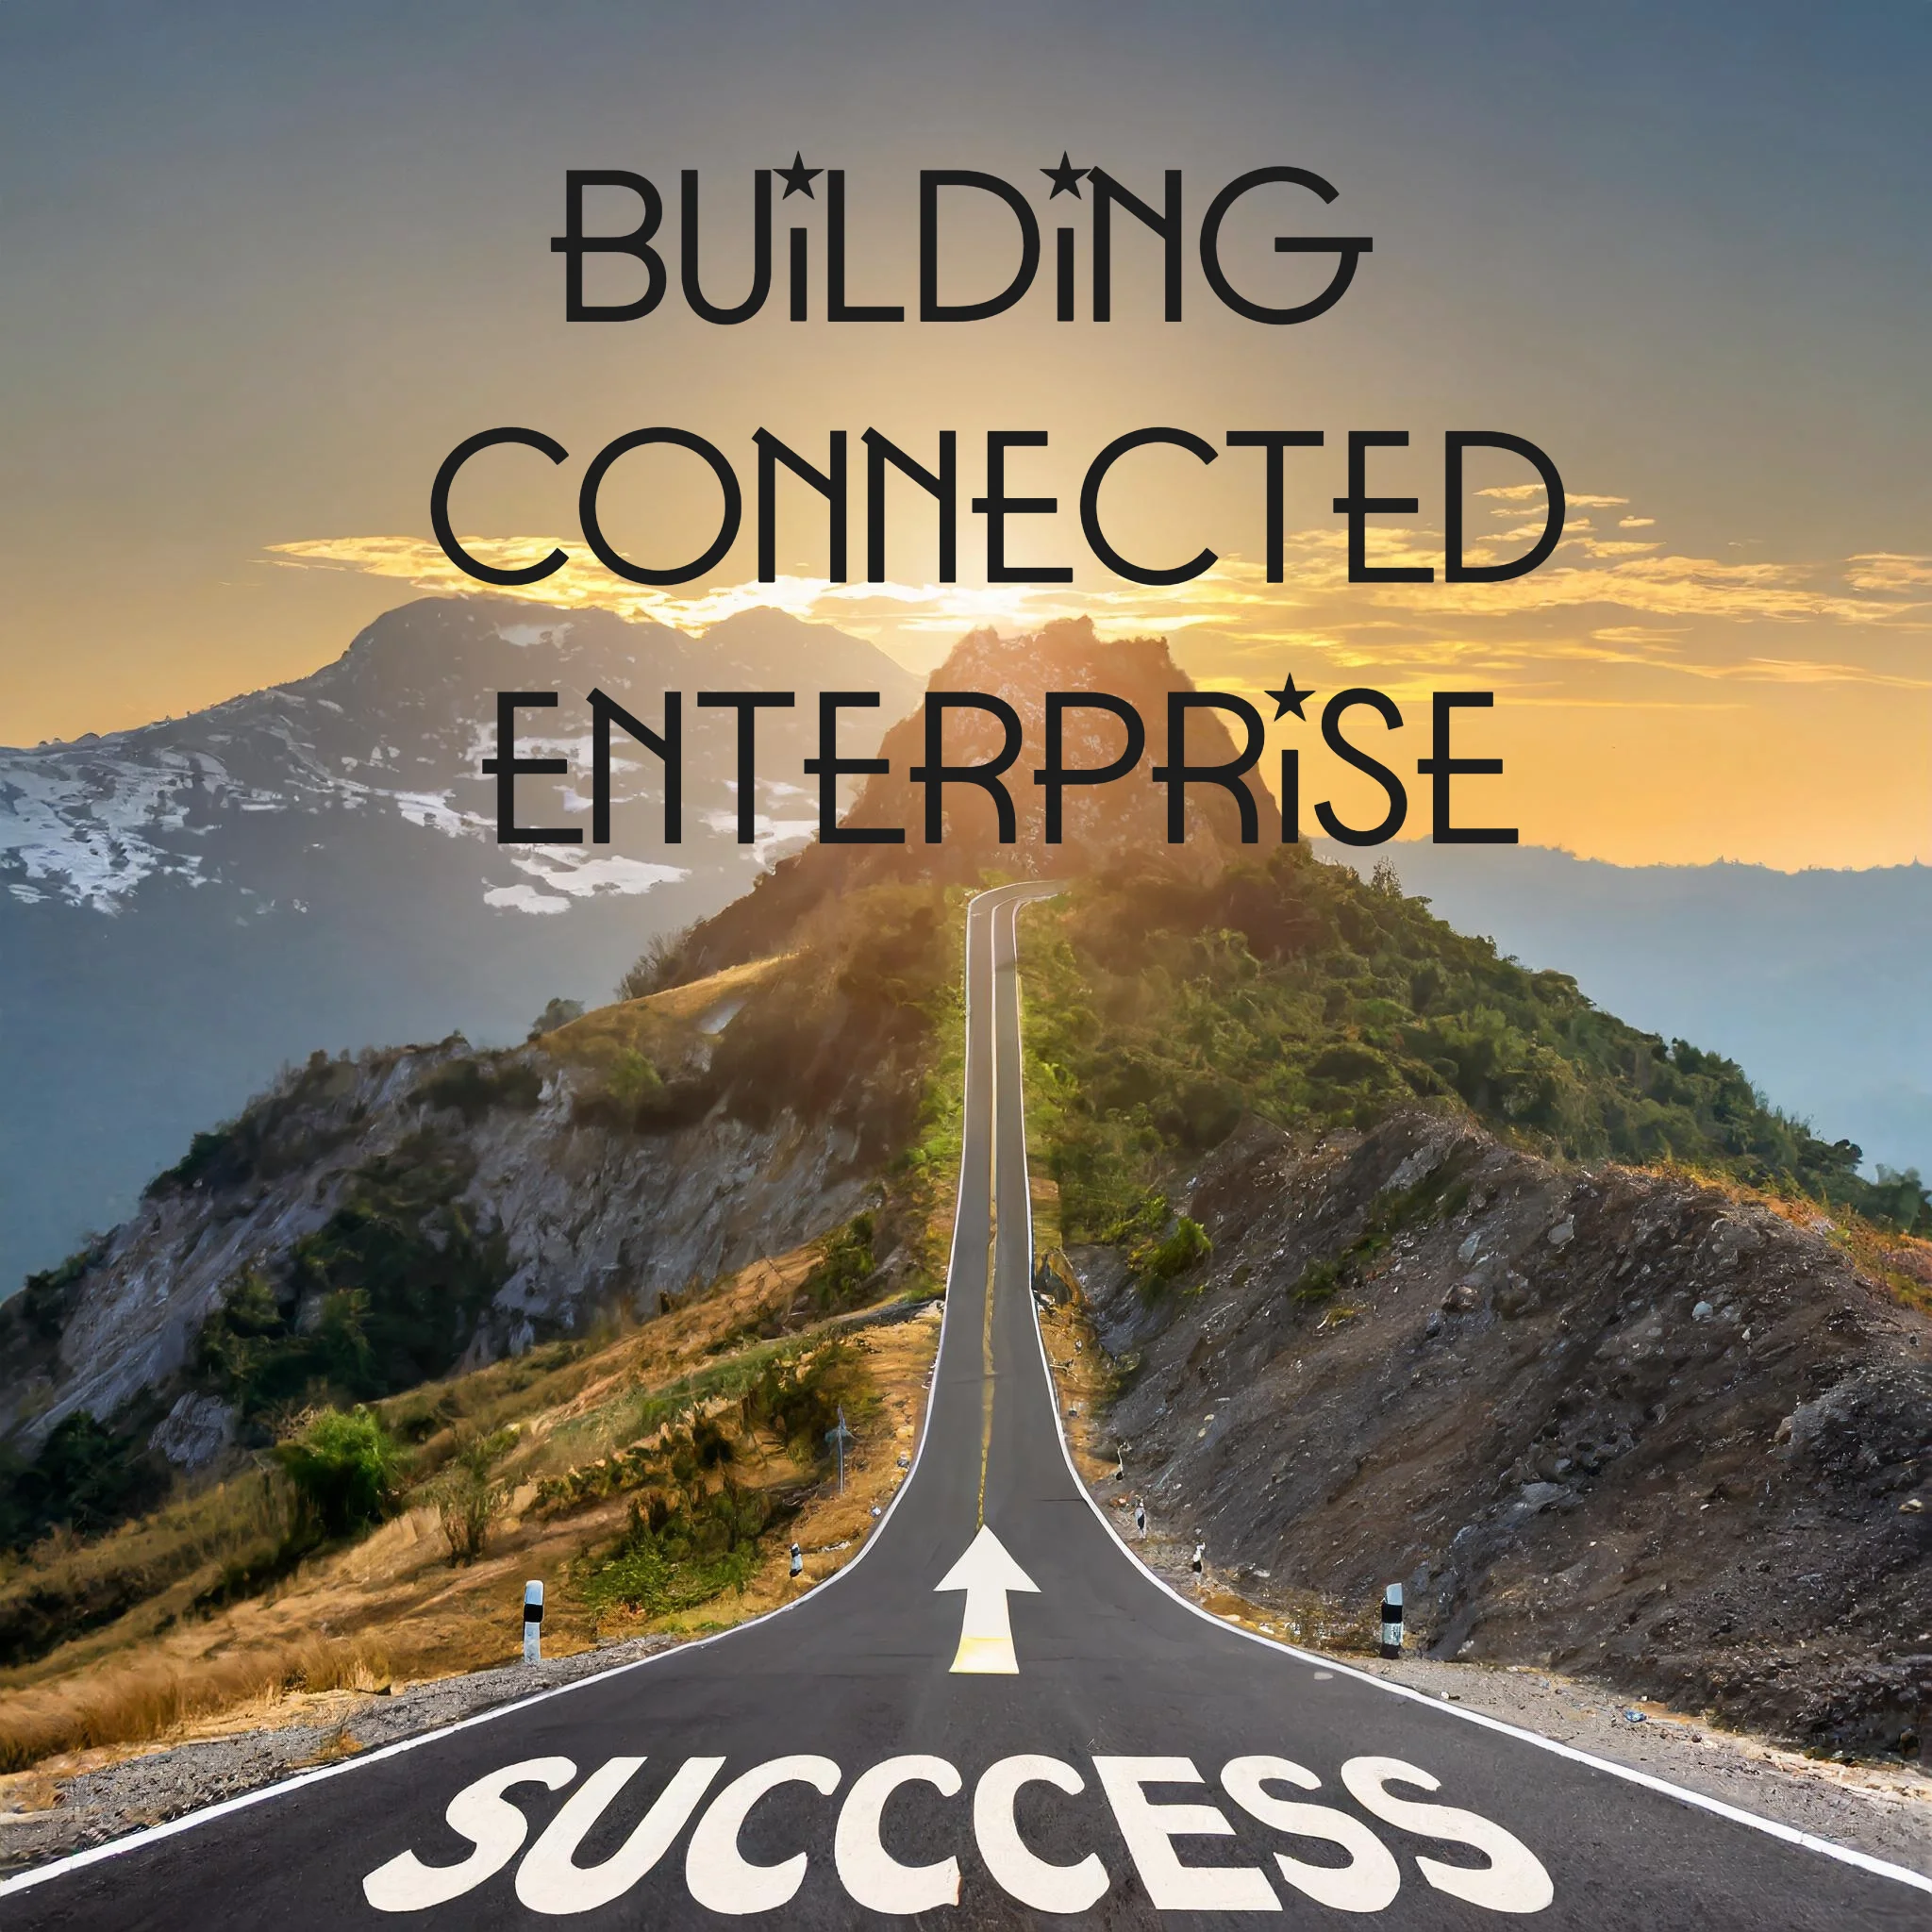 Building Connected Enterprise to Success